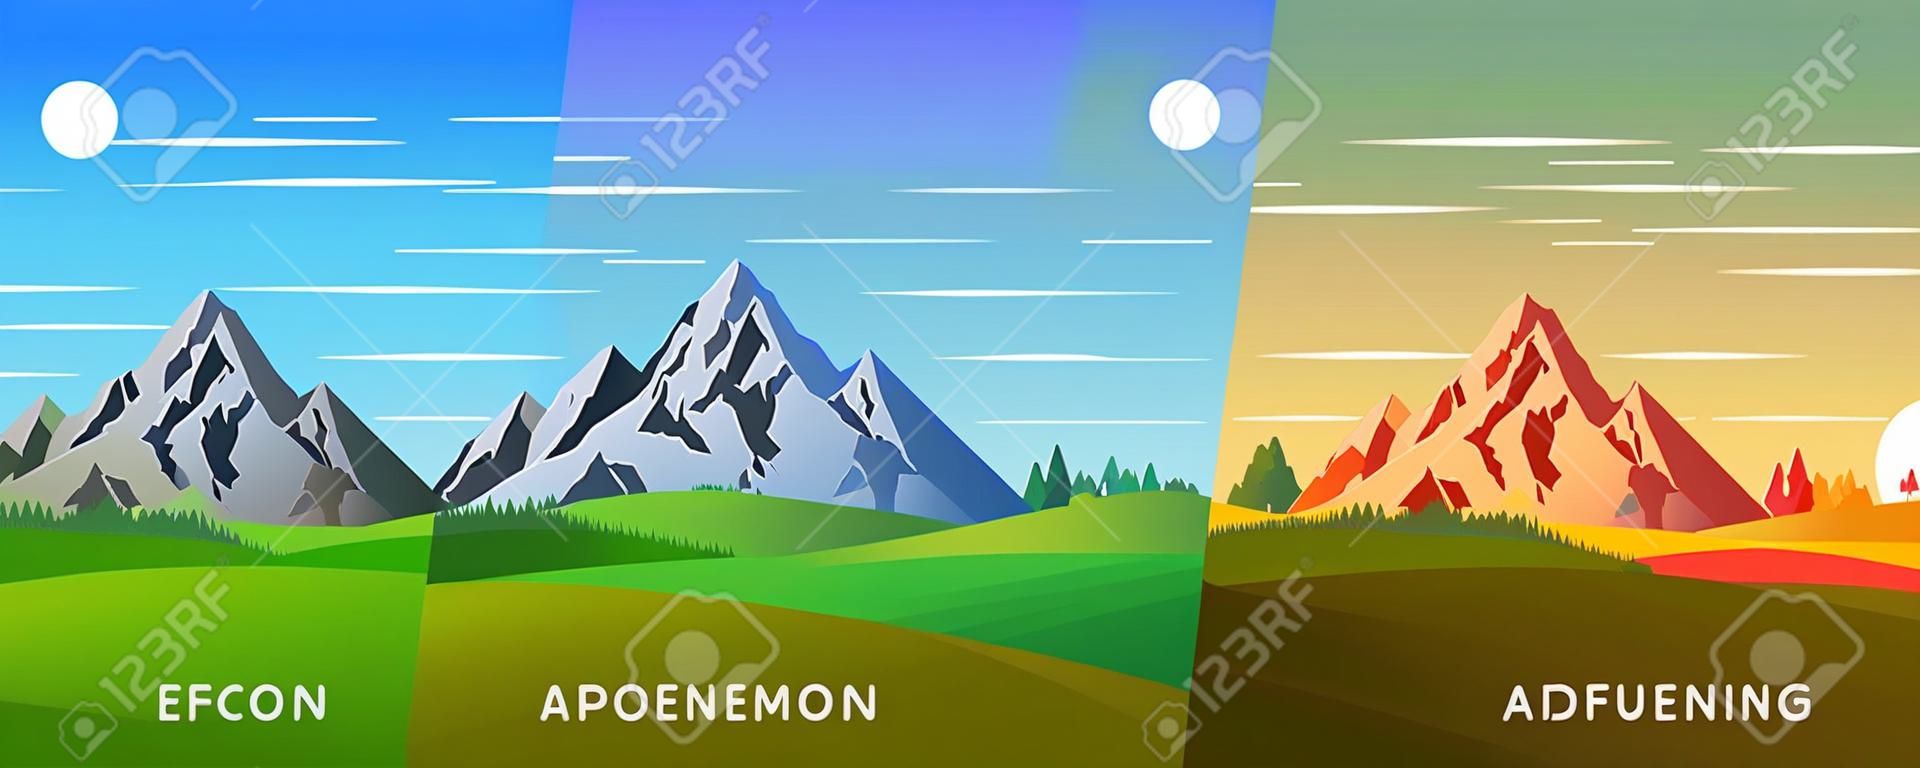 Satz von vier Vektor-Hintergrund der Tageszeiten. Schöne Berglandschaft mit buntem Himmel. Hintergrund im flachen Cartoon-Stil - polygonale Landschaftsillustration. Helle Farben.